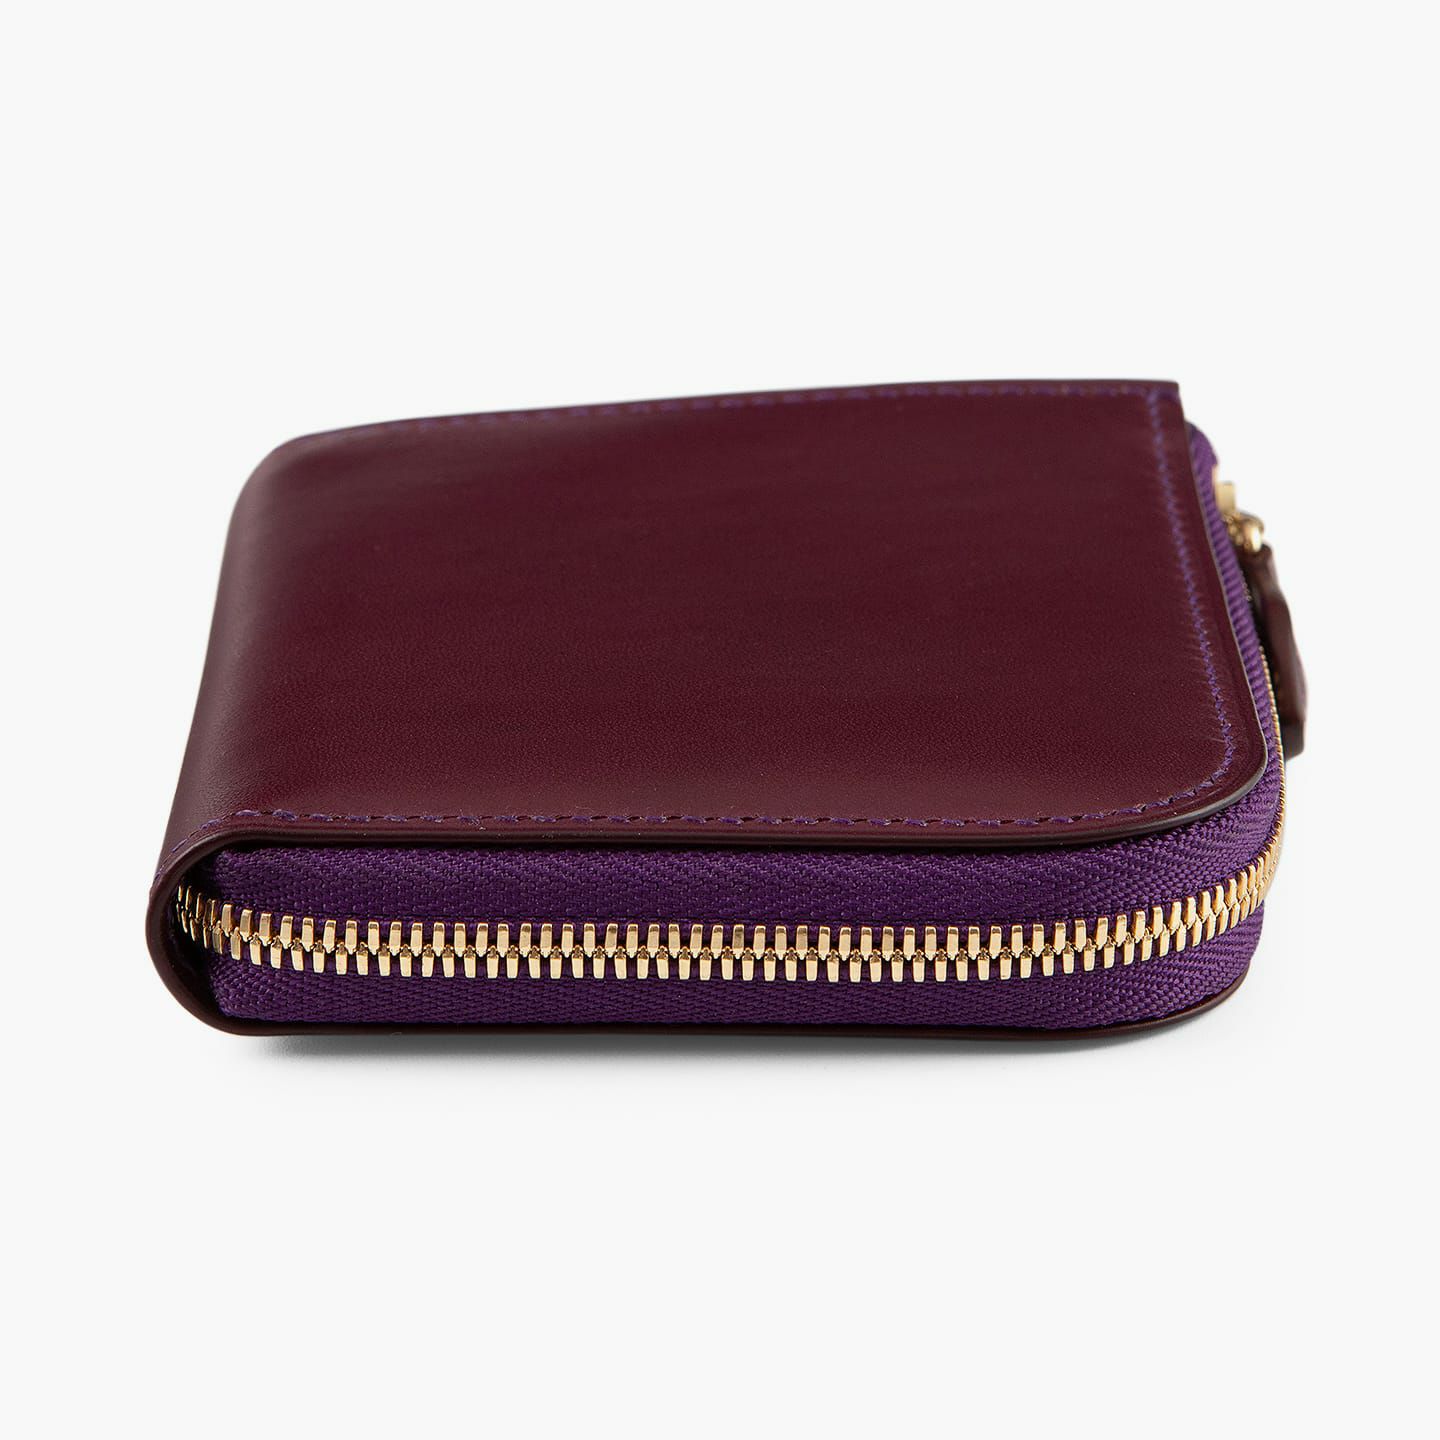 外装＆内装コインポケット（イングラサット）：Purple、内装（イングラサット）：Tan、糸色：外装＆内装コインポケットと同系色、ファスナー：Gold、引き手：外装と同じ革